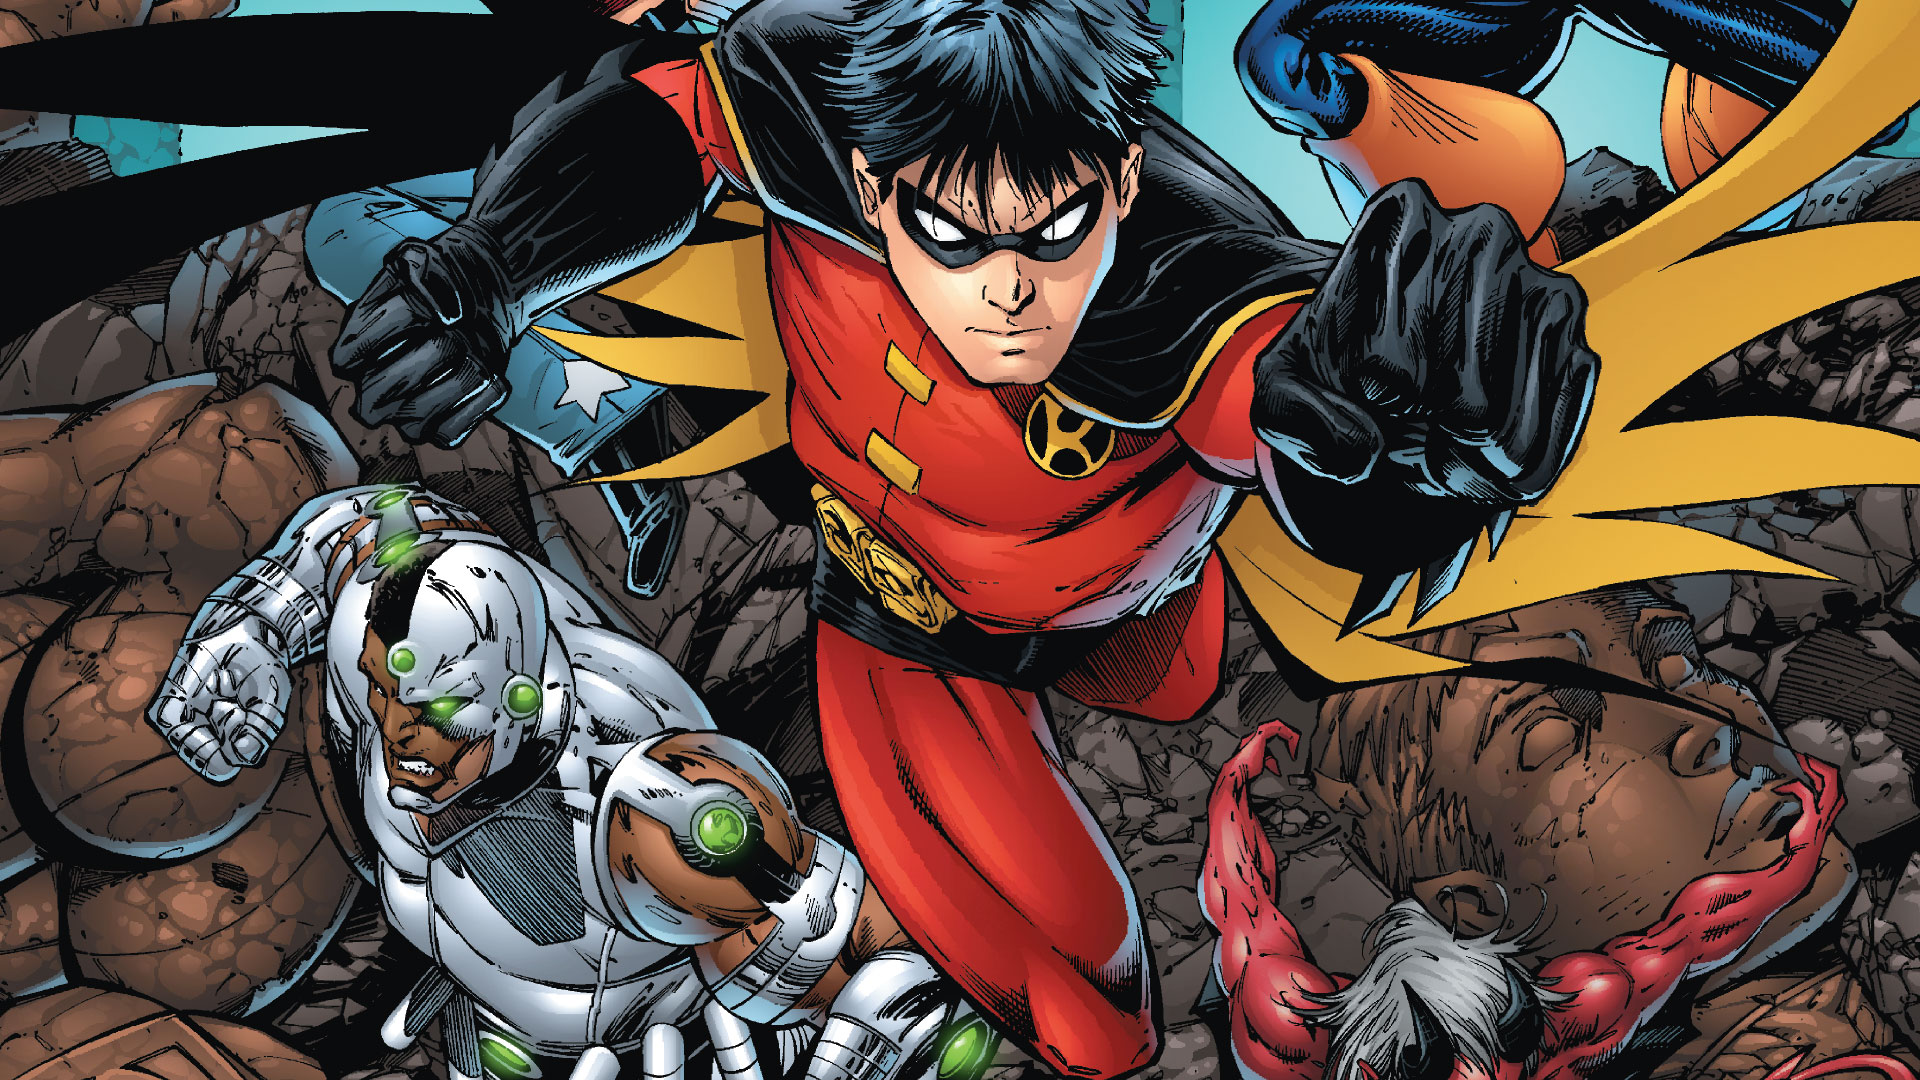 Comics Teen Titans HD Wallpaper | Background Image